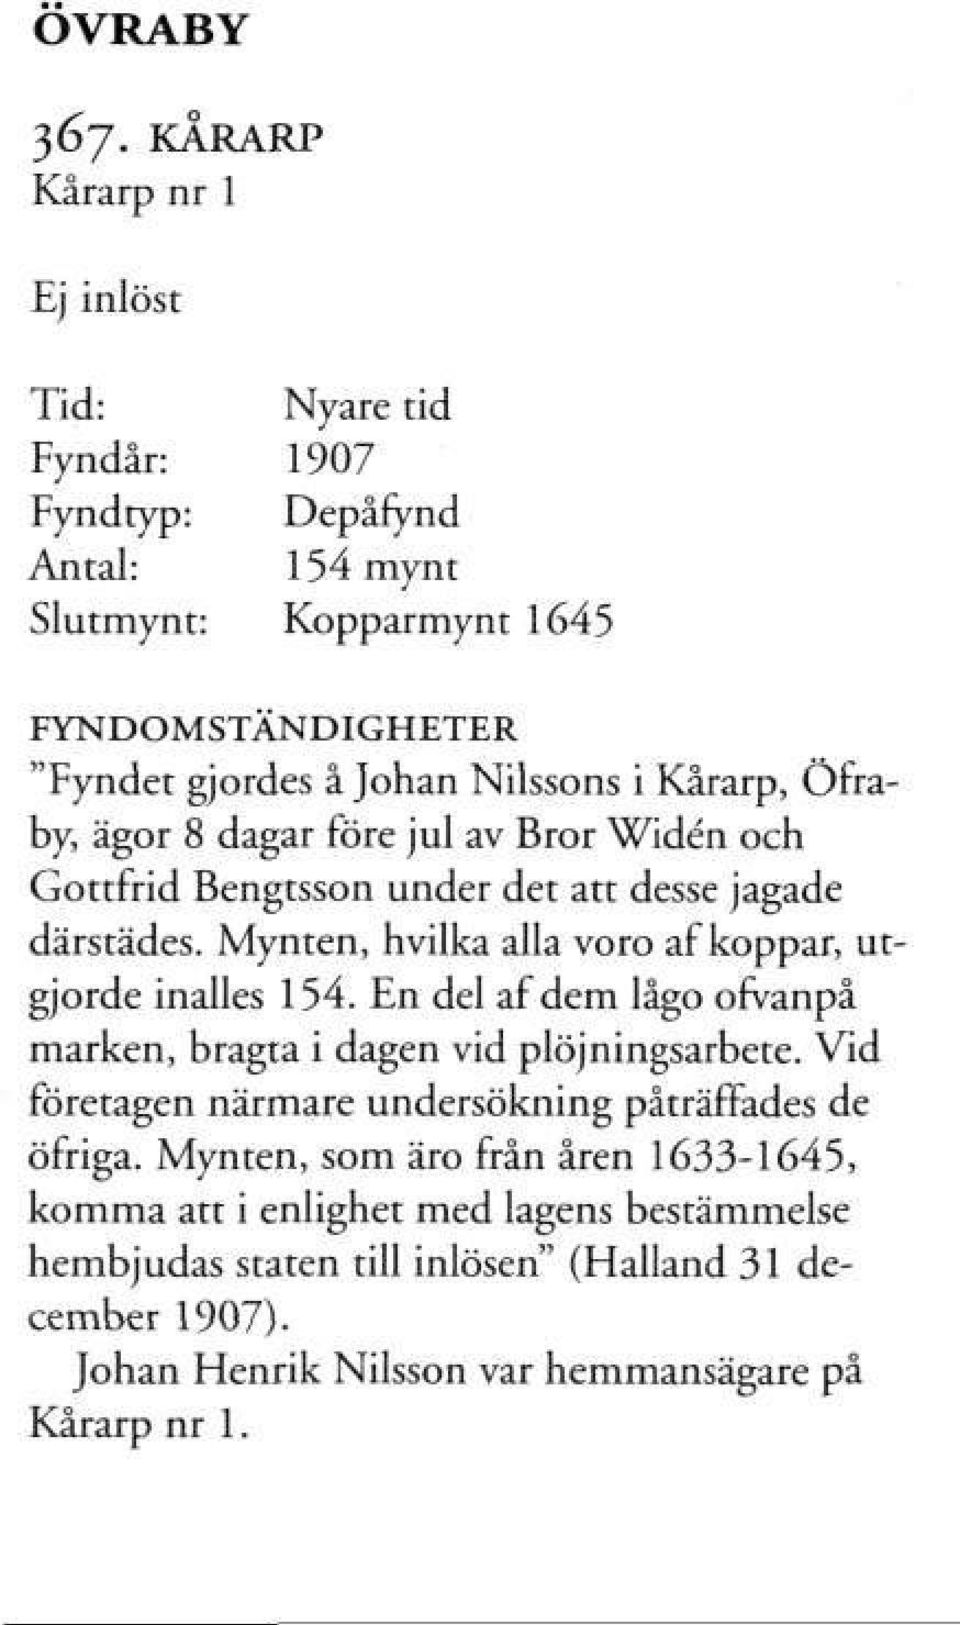 Öfraby, ägor 8 dagar före jul av Bror Widén och Gottfrid Bengtsson under det att desse jagade därstädes. Mynten, hvilka alla voro af koppar, utgjorde inalles 154.